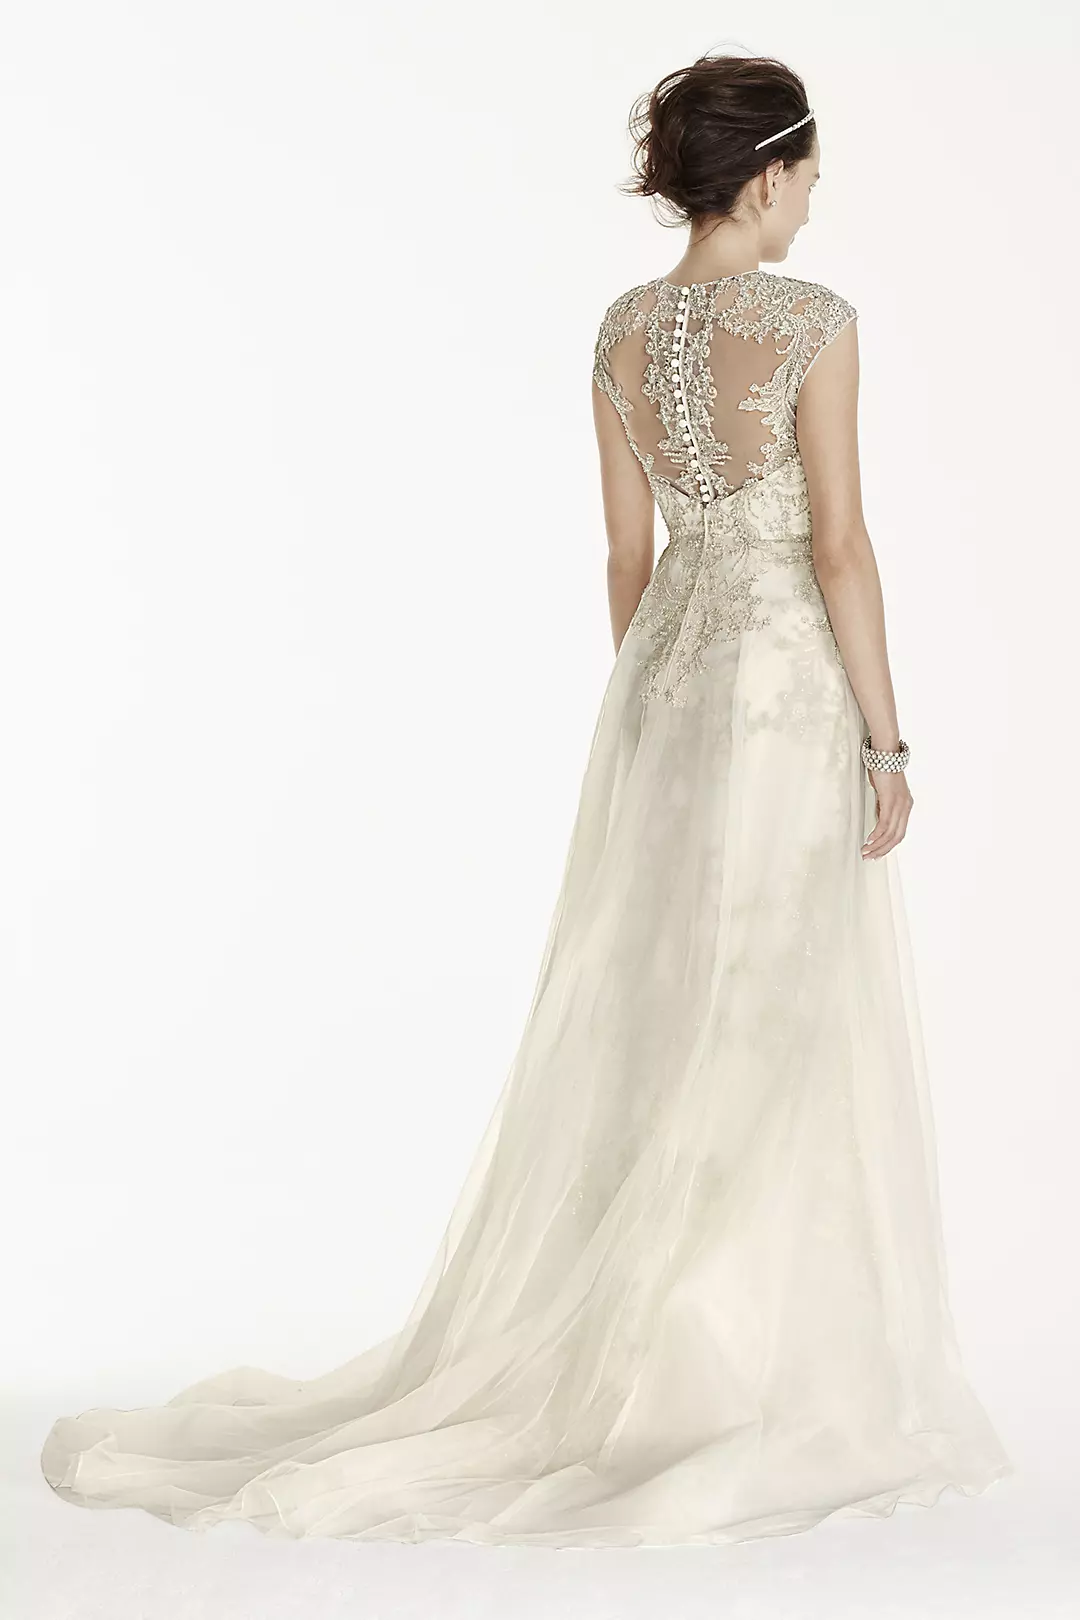 Oleg Cassini Beaded Lace with Tulle Wedding Dress Image 2